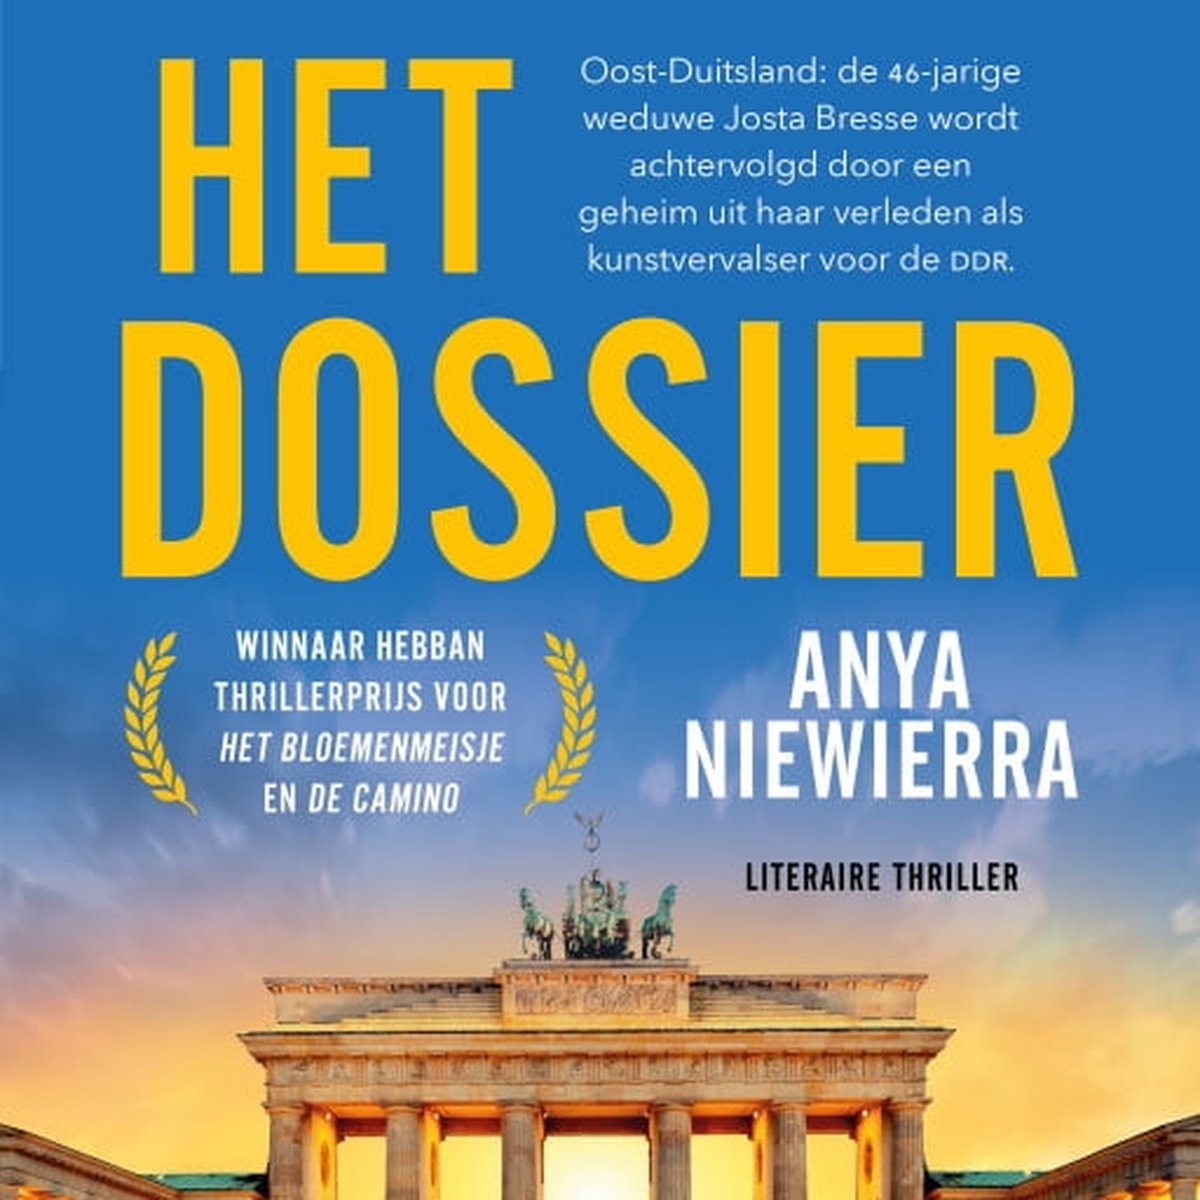 Het dossier - Anya Niewierra